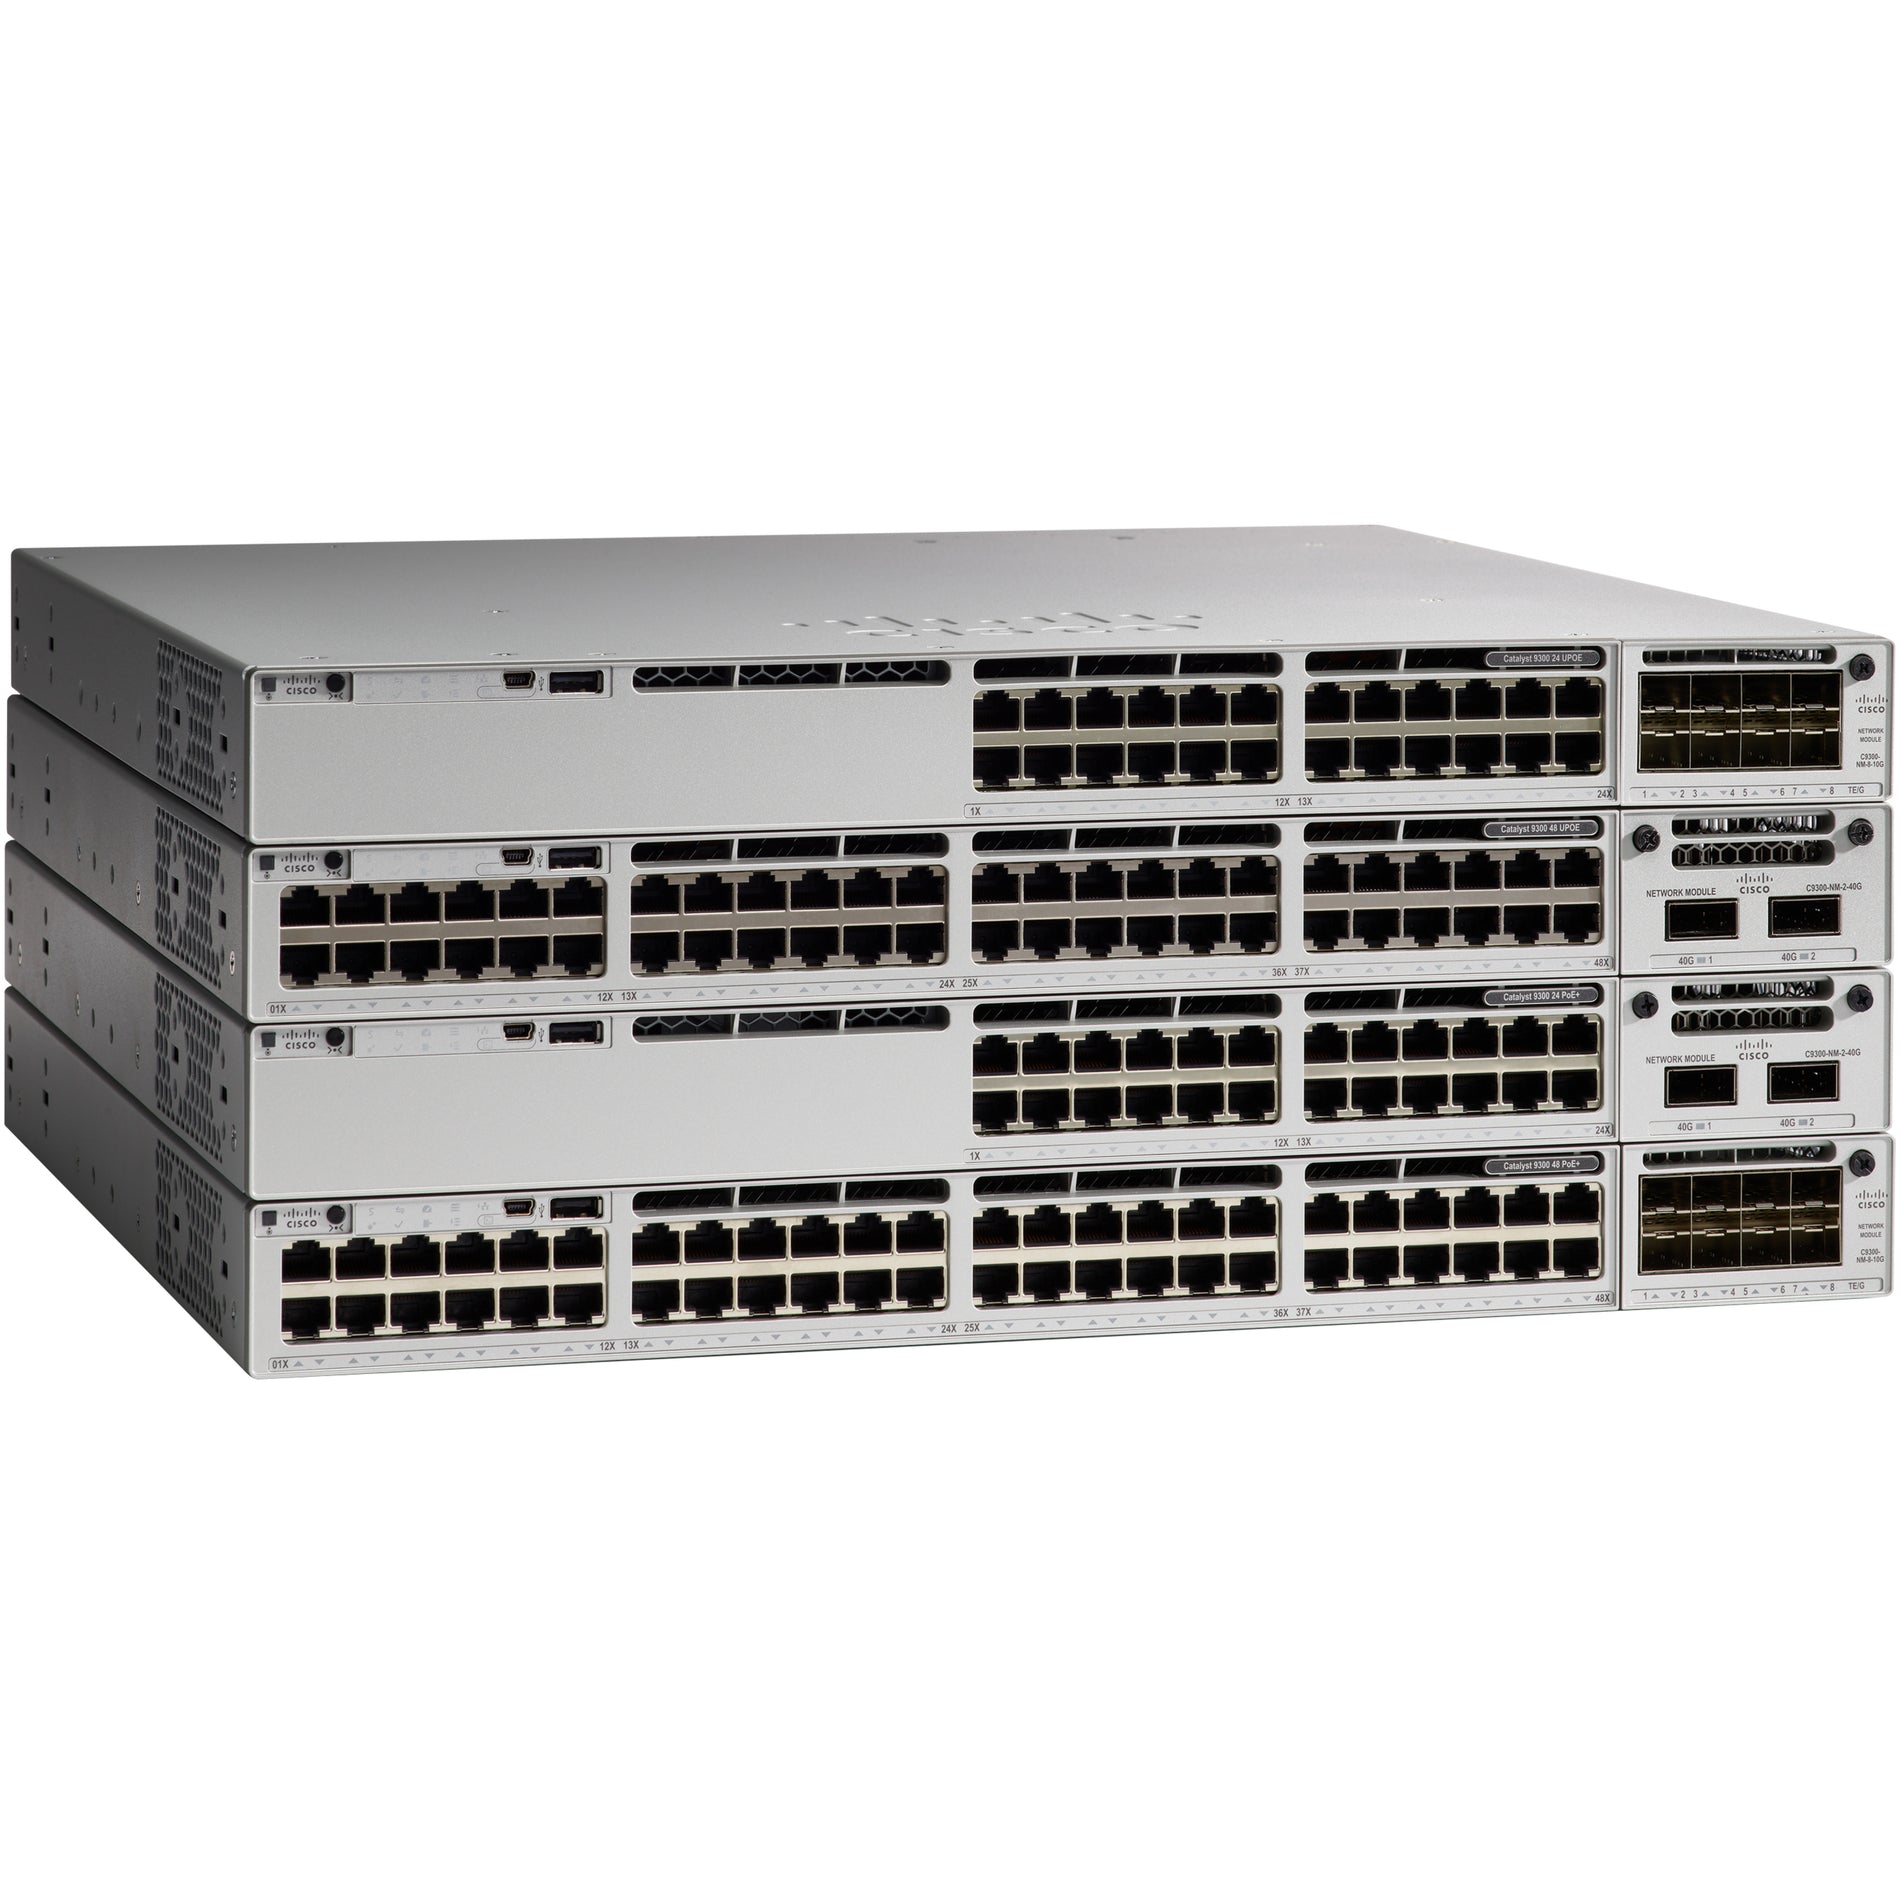 思科 C9300-24UX-E 首发 24 端口网管交换机 思科 - Cisco